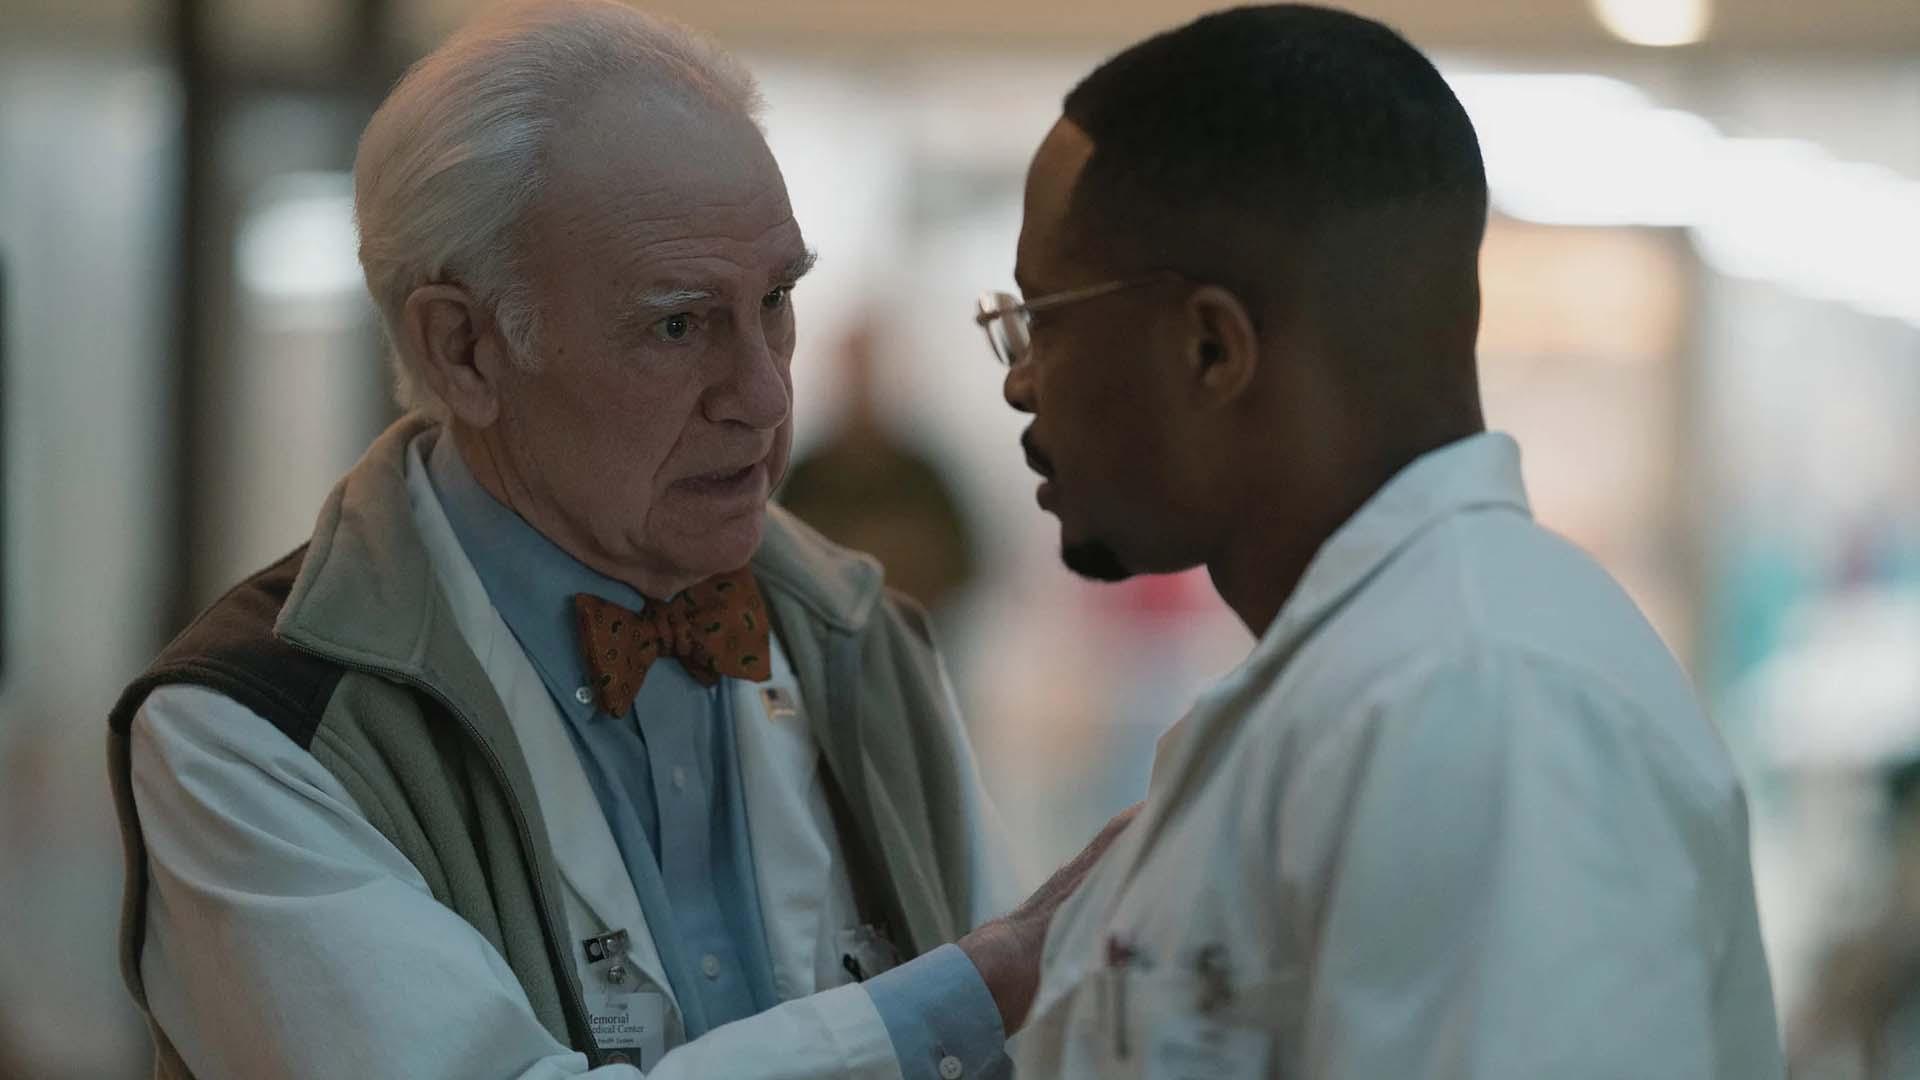 دو پزشک در حال صحبت کردن در بیمارستان در سریال Five Days at Memorial 